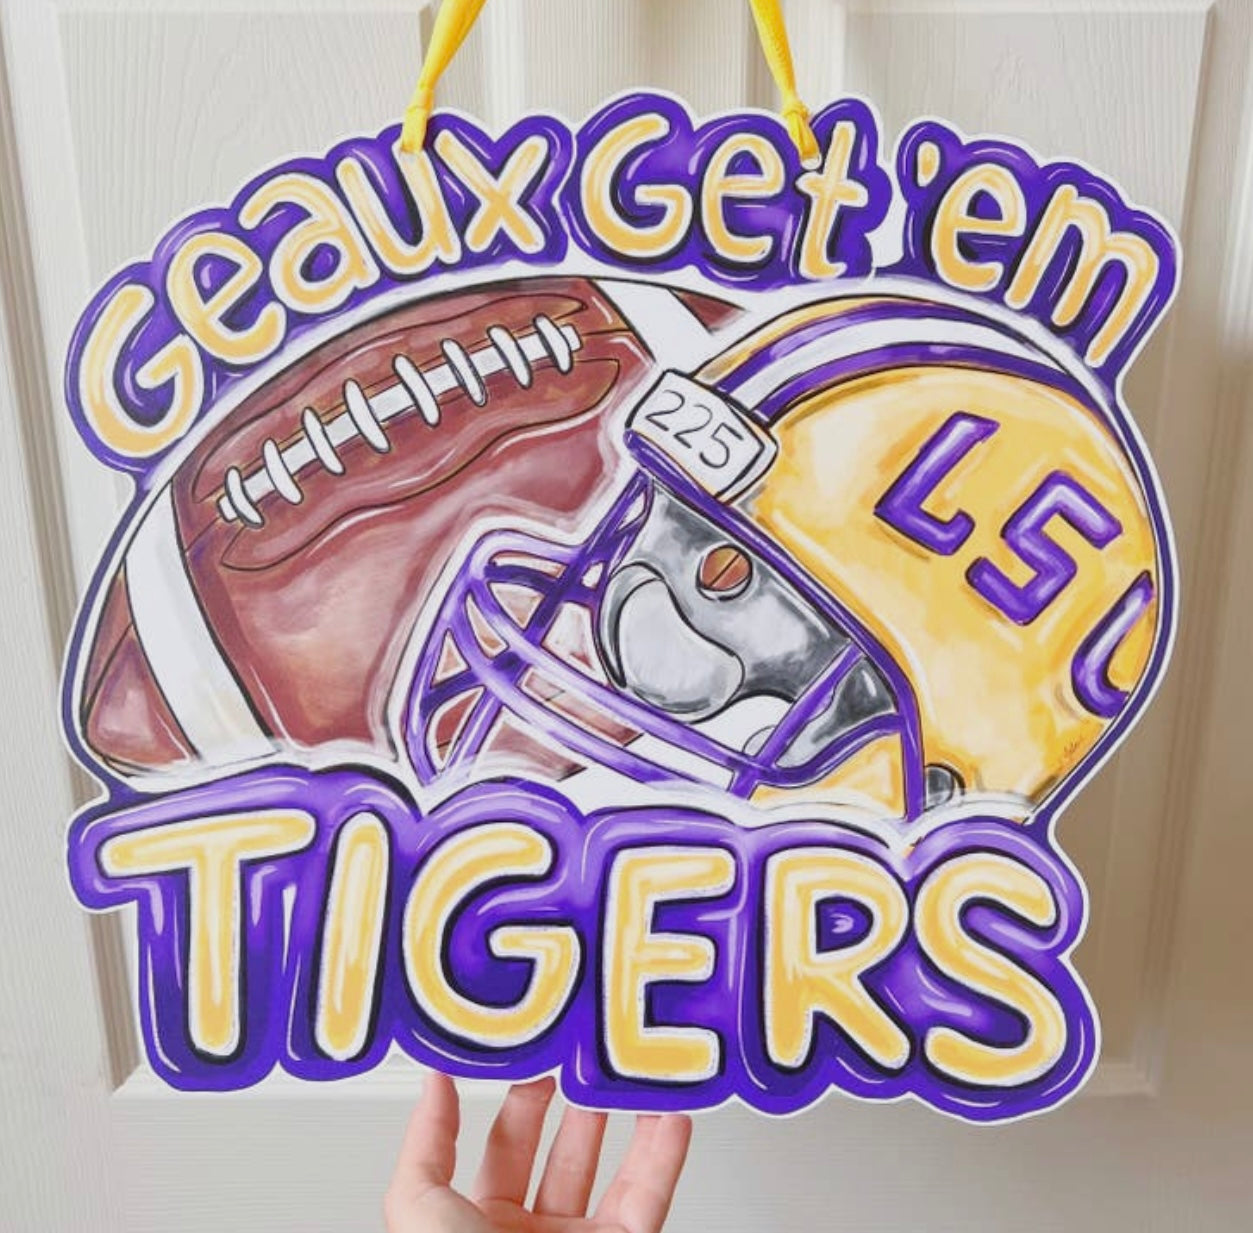 Geaux Get Em Tigers Door Hanger